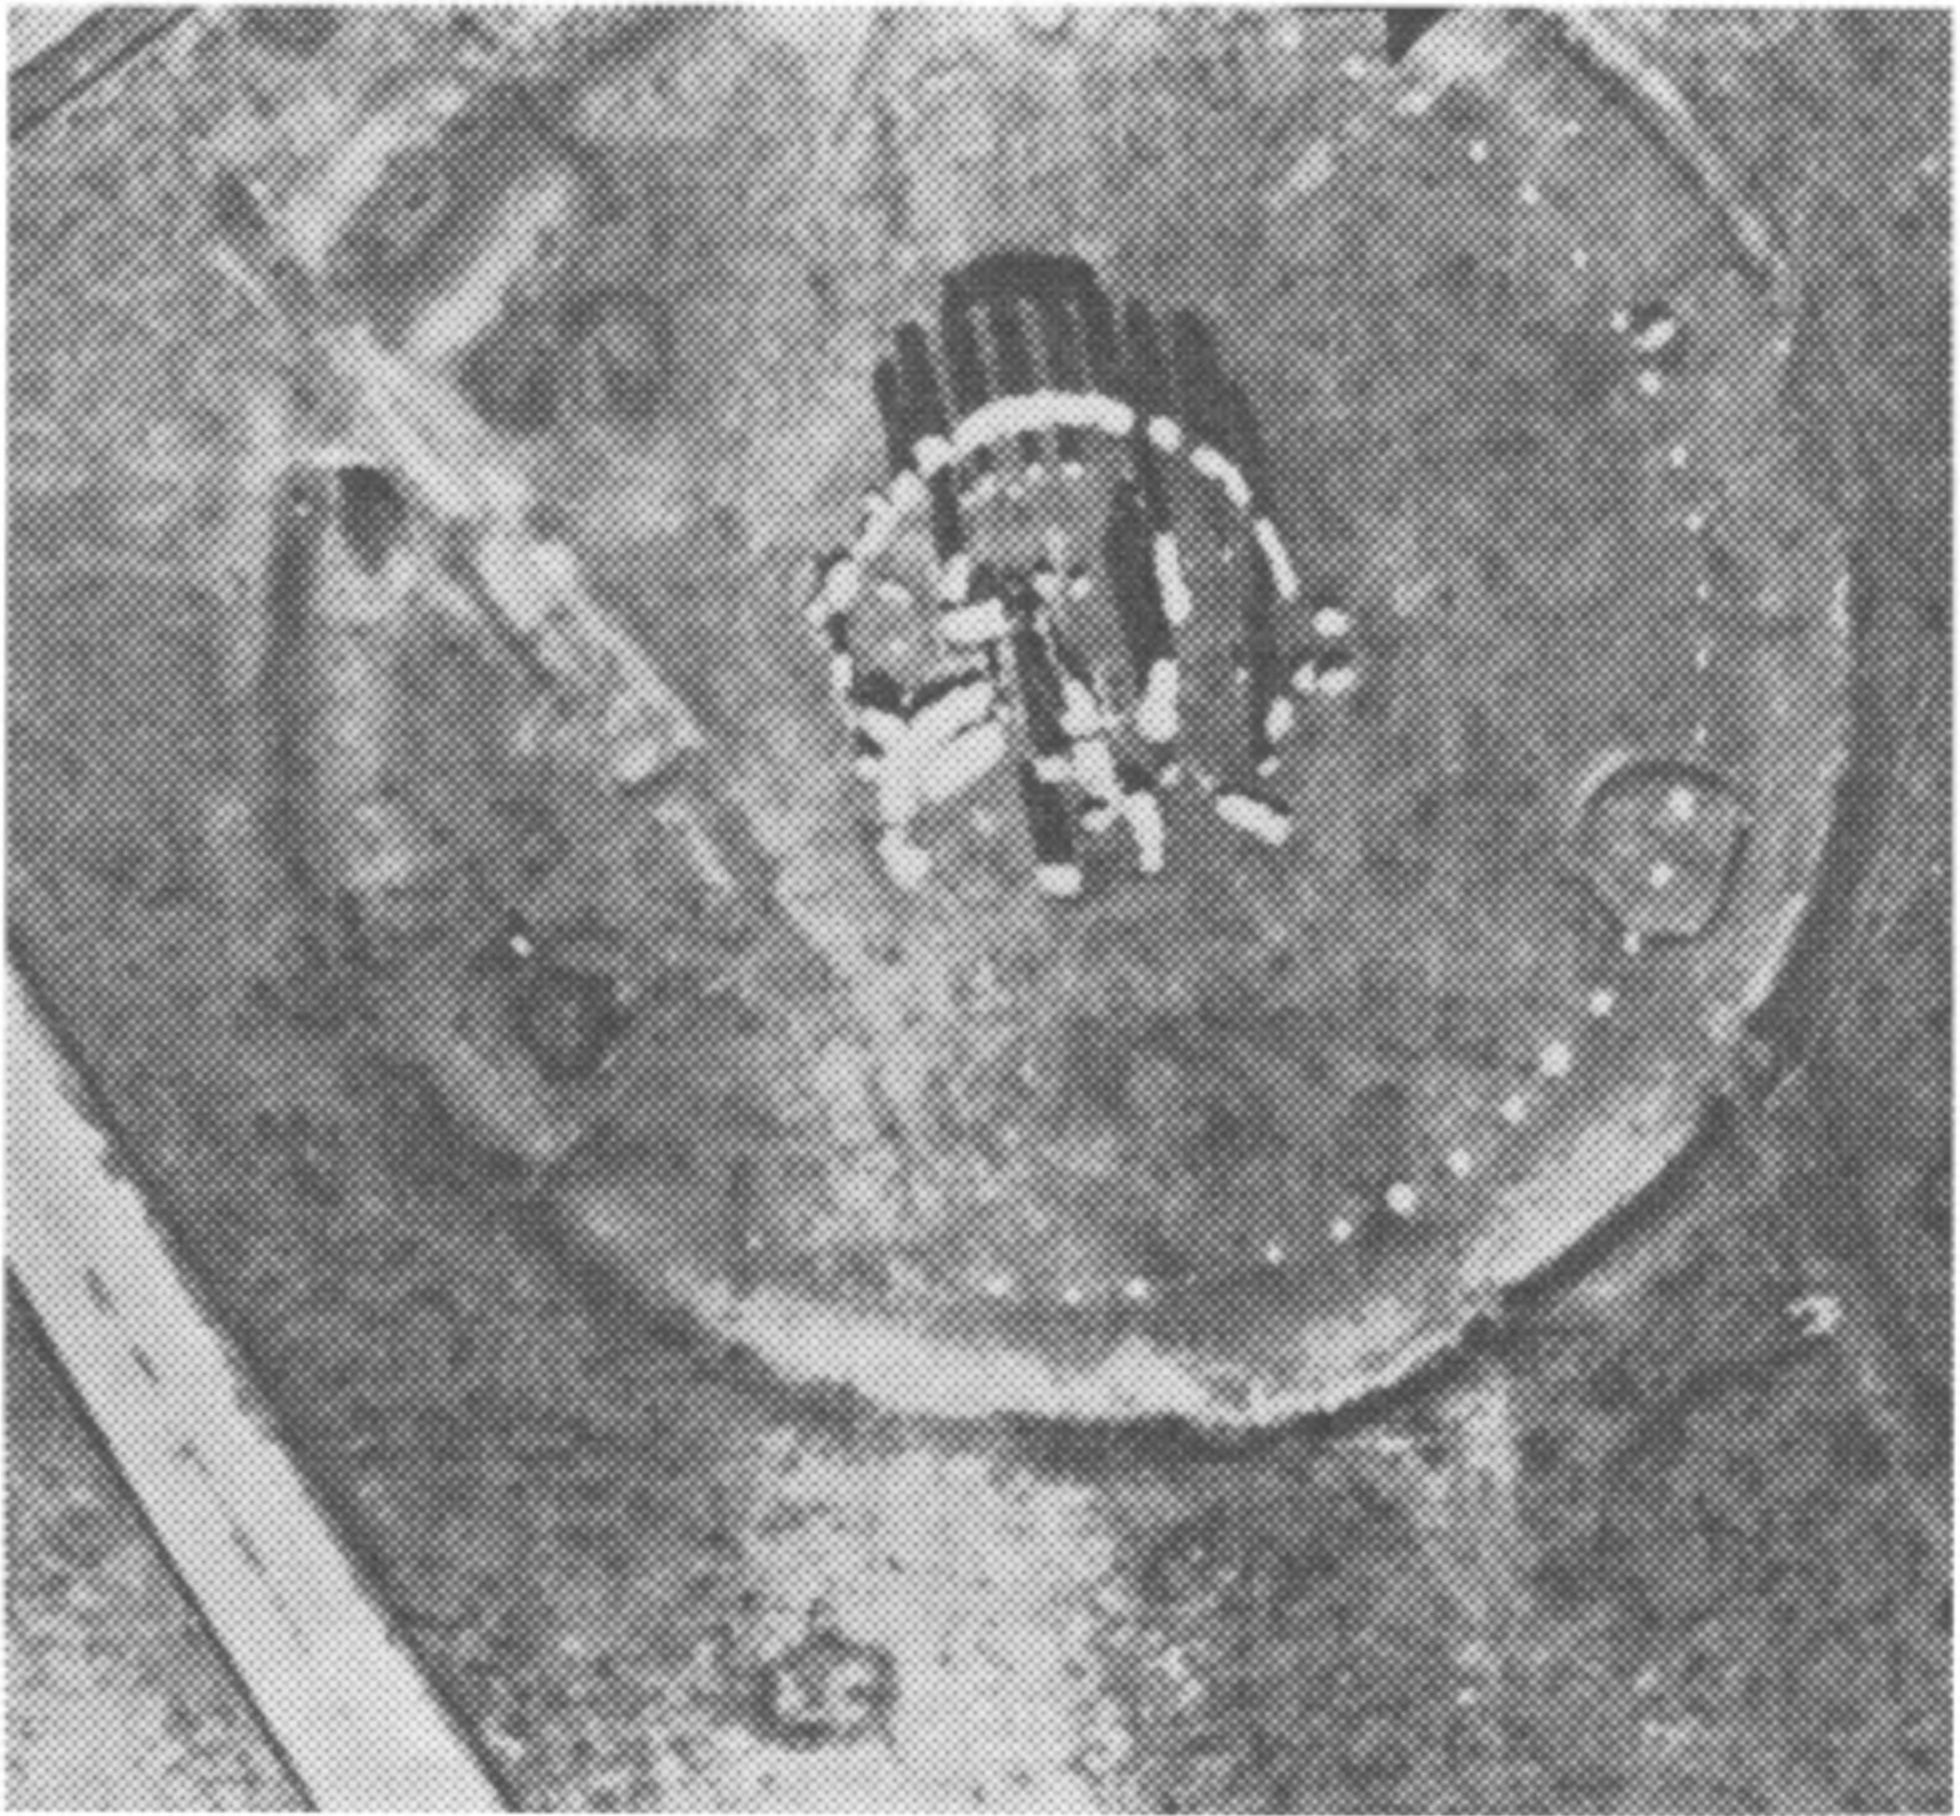 Фото 5. Рекогносцировочная фотография времен войны, август 1944 г. Обратите внимание, что трилит № 57—58 лежит